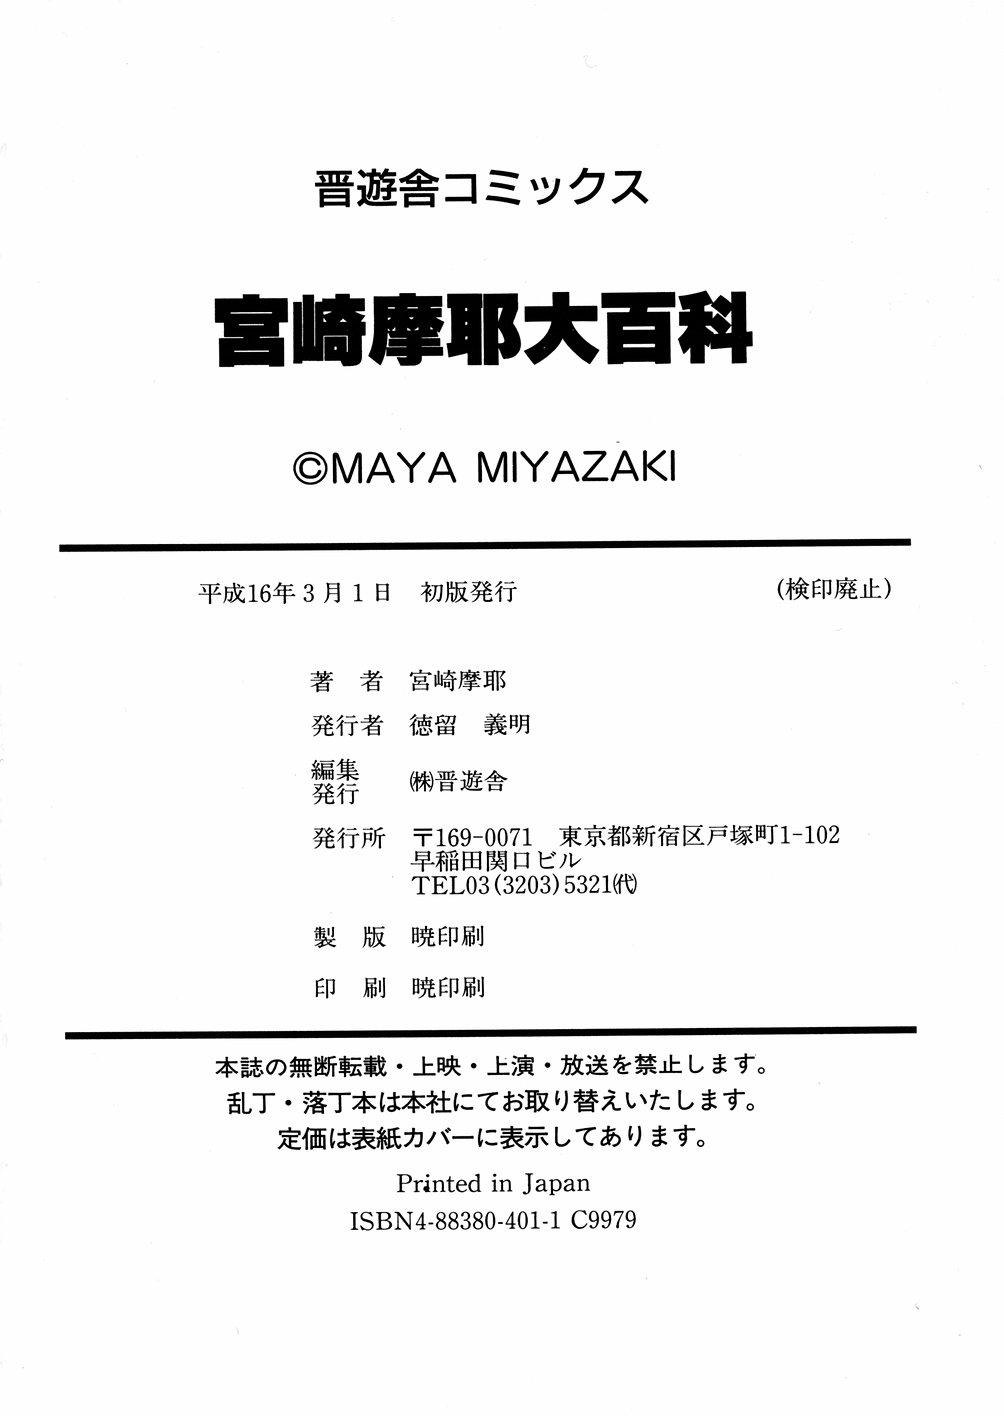 Miyazaki Maya daihyakka 166